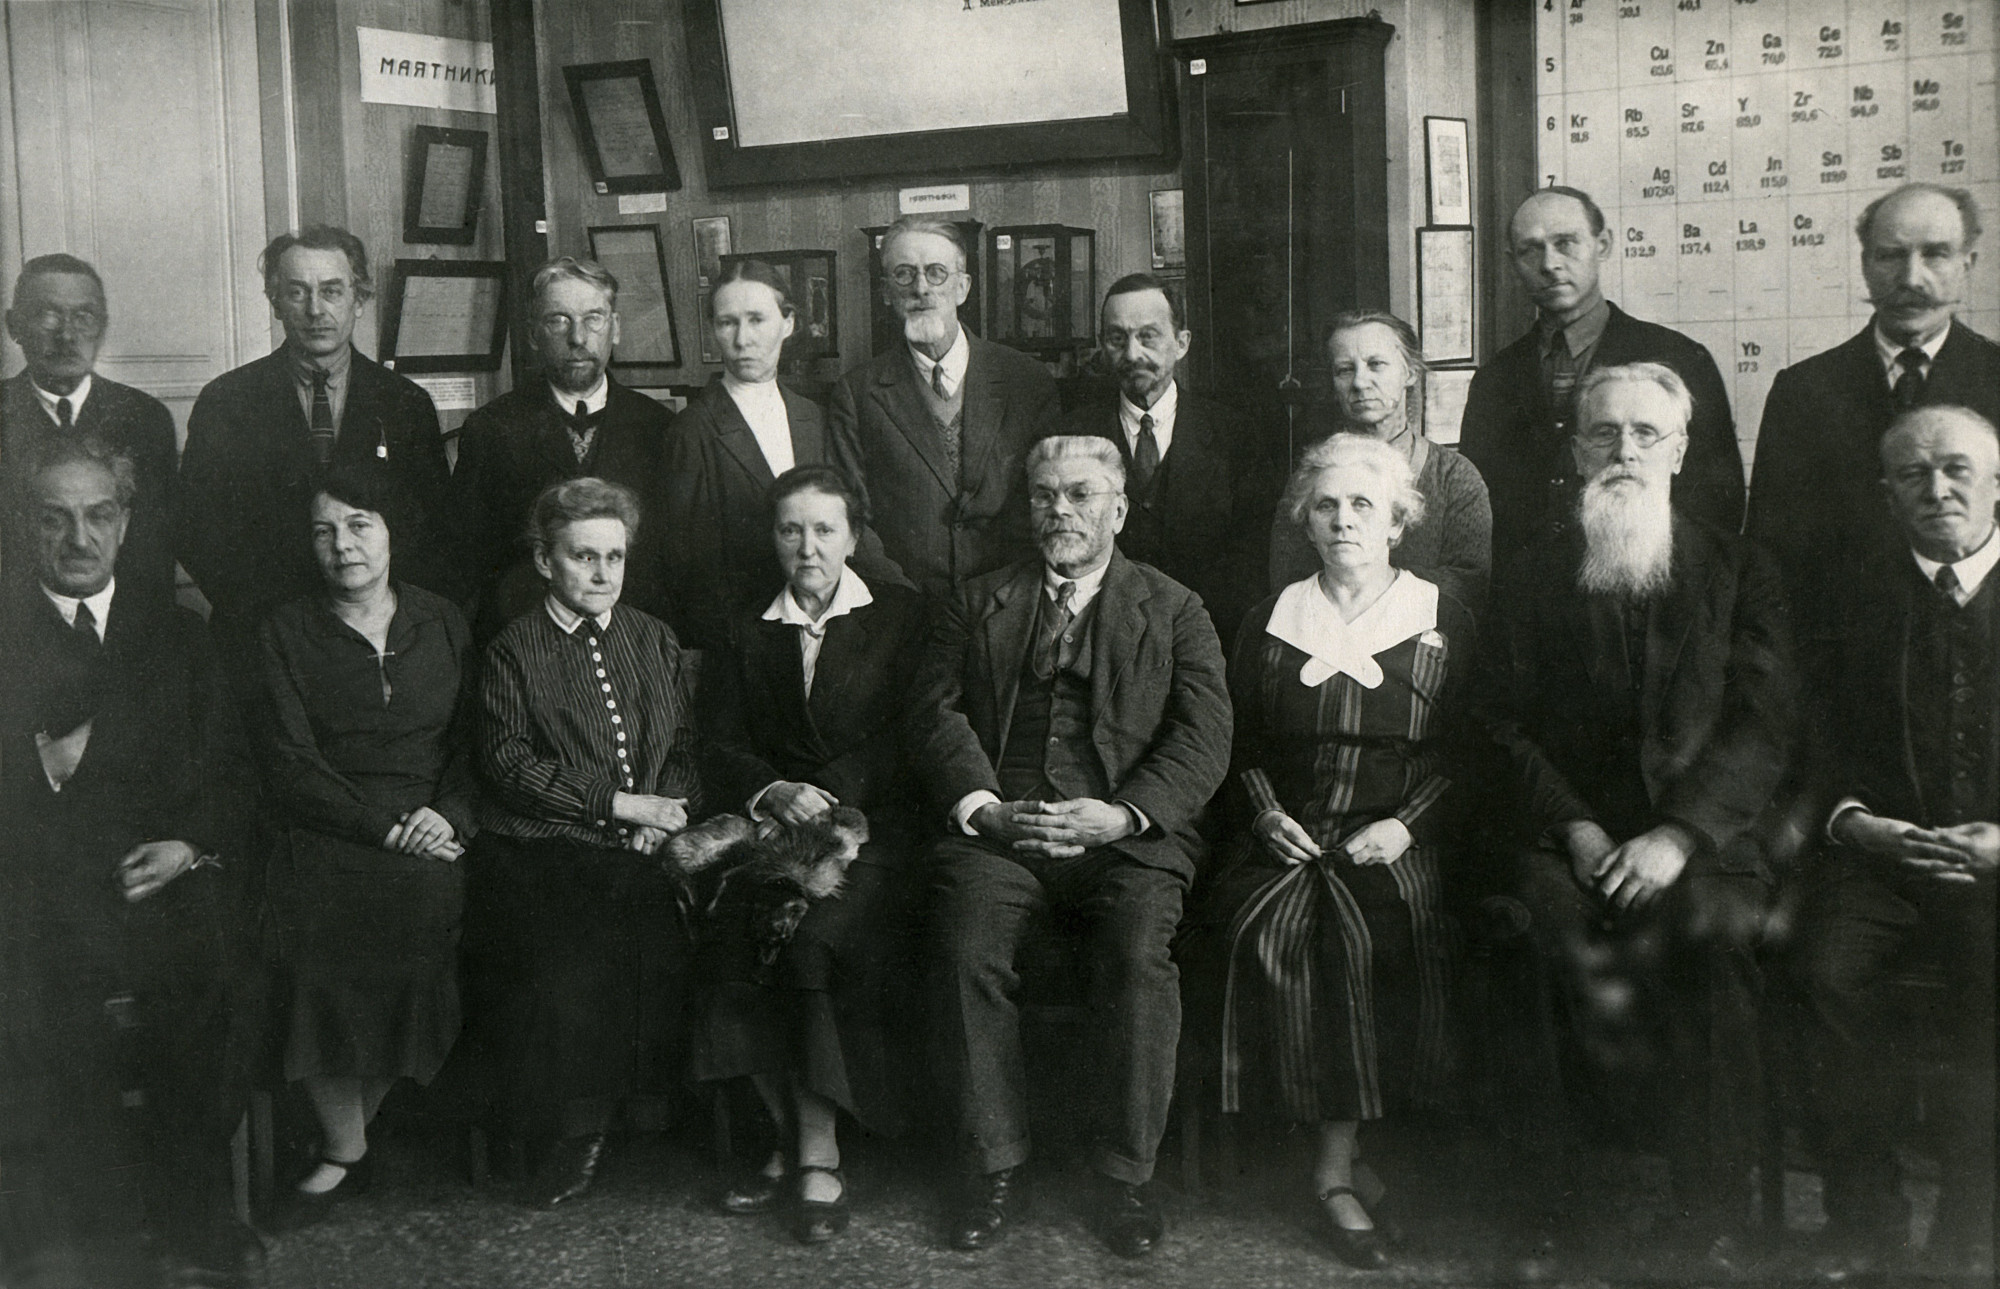 Сотрудники, работавшие в Главной палате мер и весов при Д.И. Менделееве. Фото 1934 года.